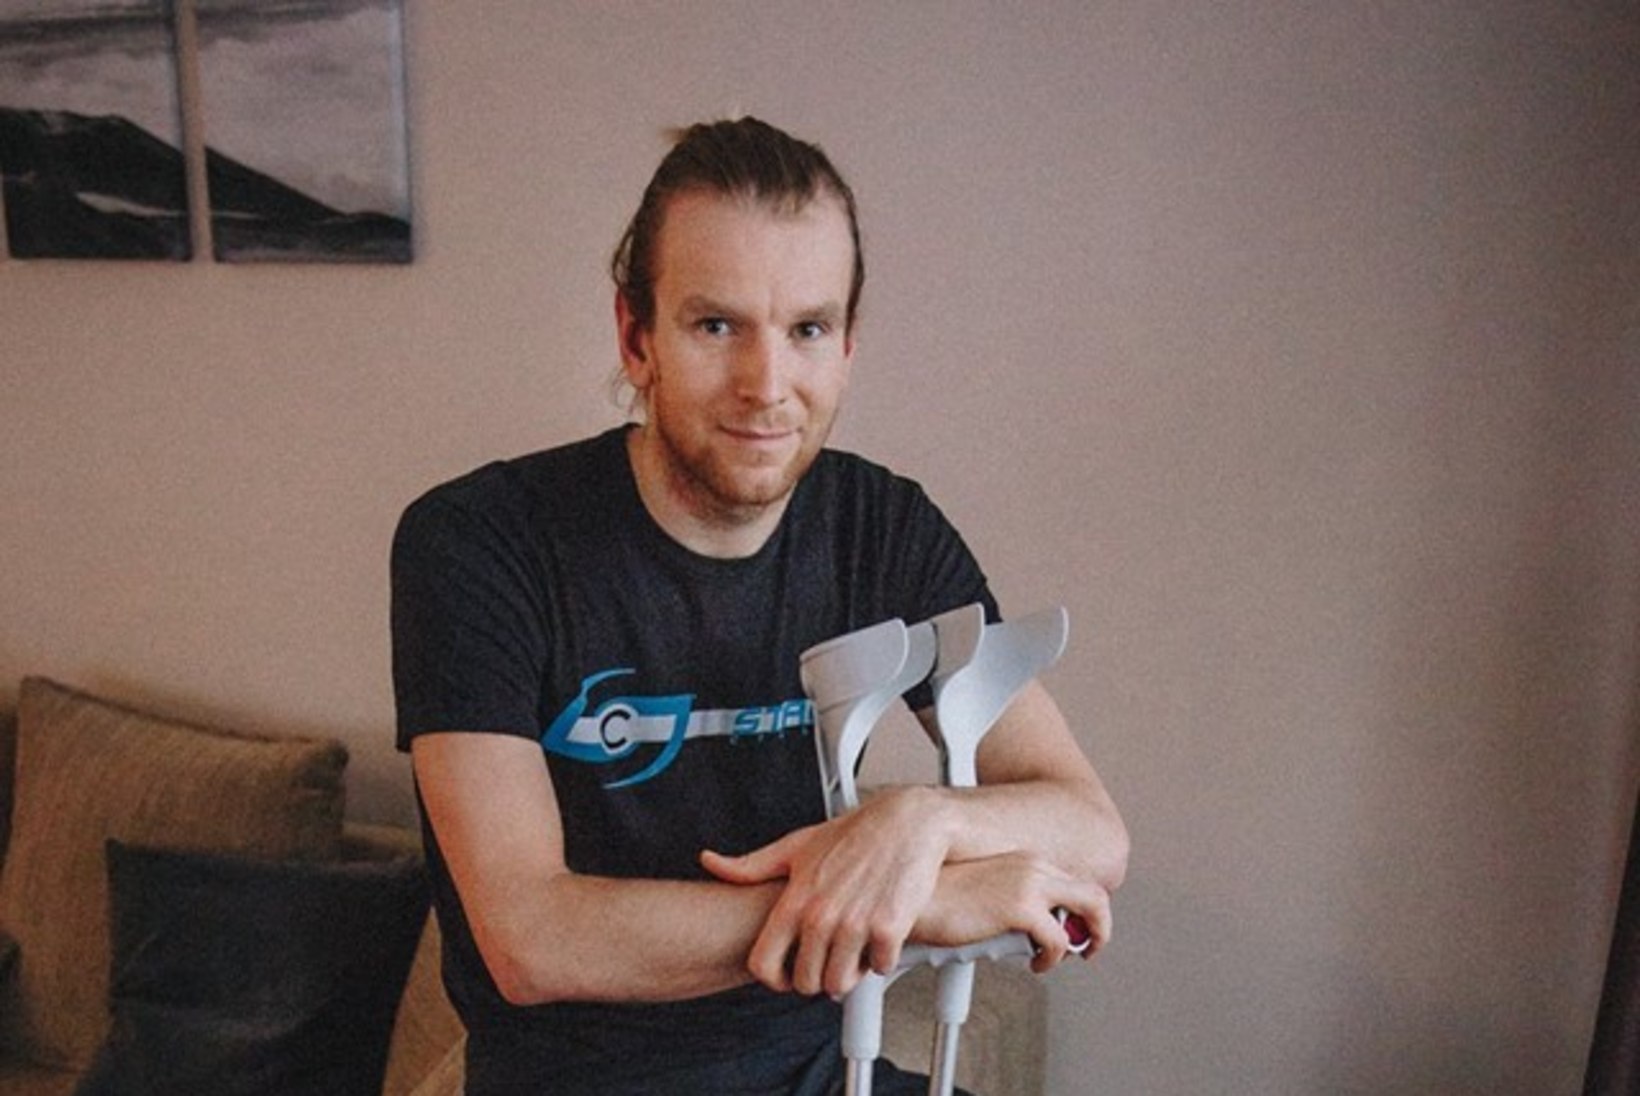 Eesti triatleet käis haruldase vigastuse tõttu noa all